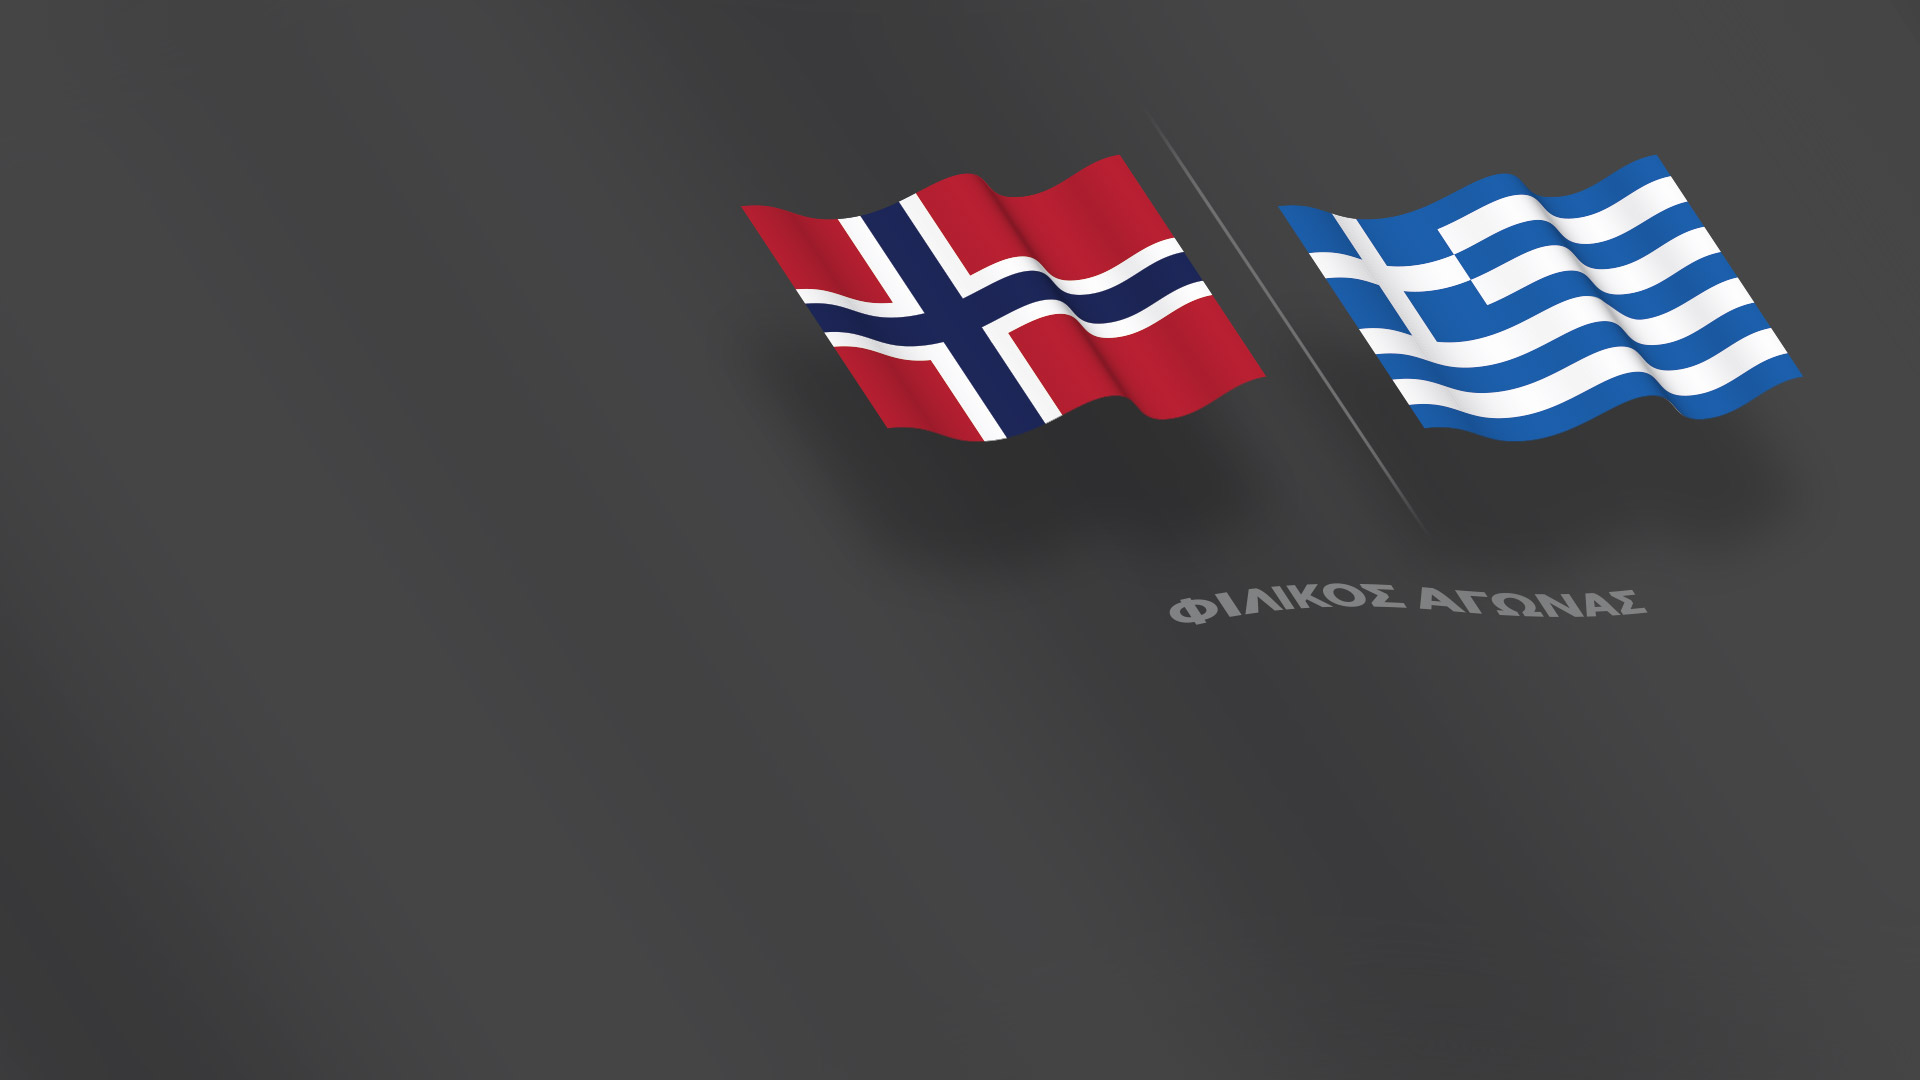 Φιλικός αγώνας - Νορβηγία-Ελλάδα